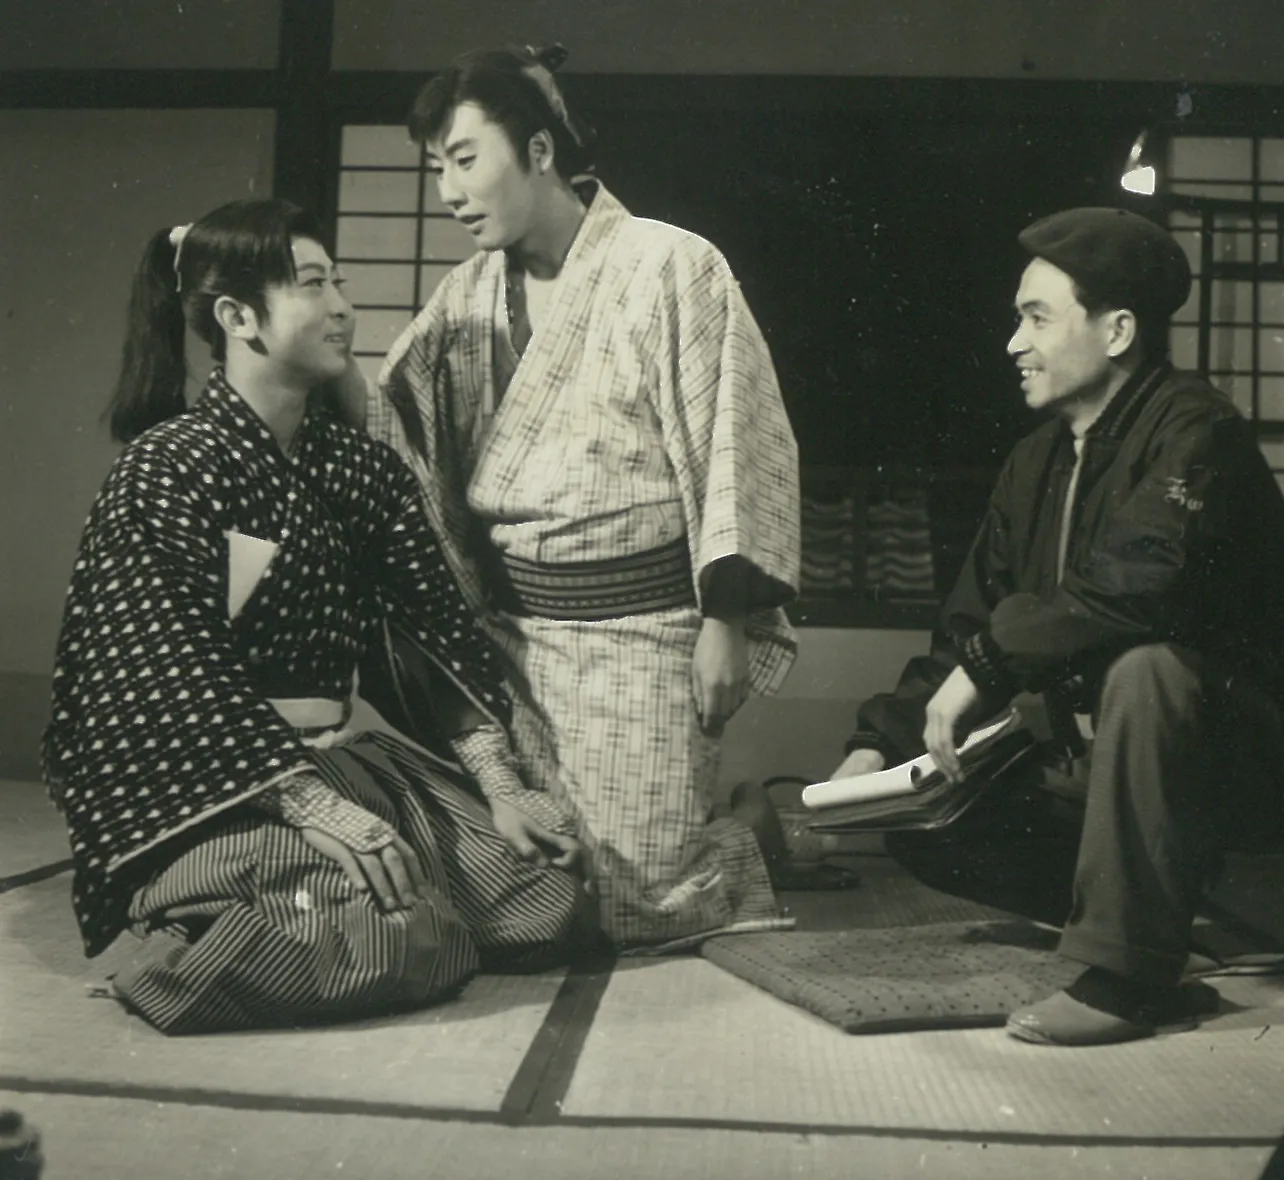 映画「旅はお色気」(1961年)のオフショット。市川雷蔵と主演の小林勝彦、黒田義之監督が笑顔で談笑